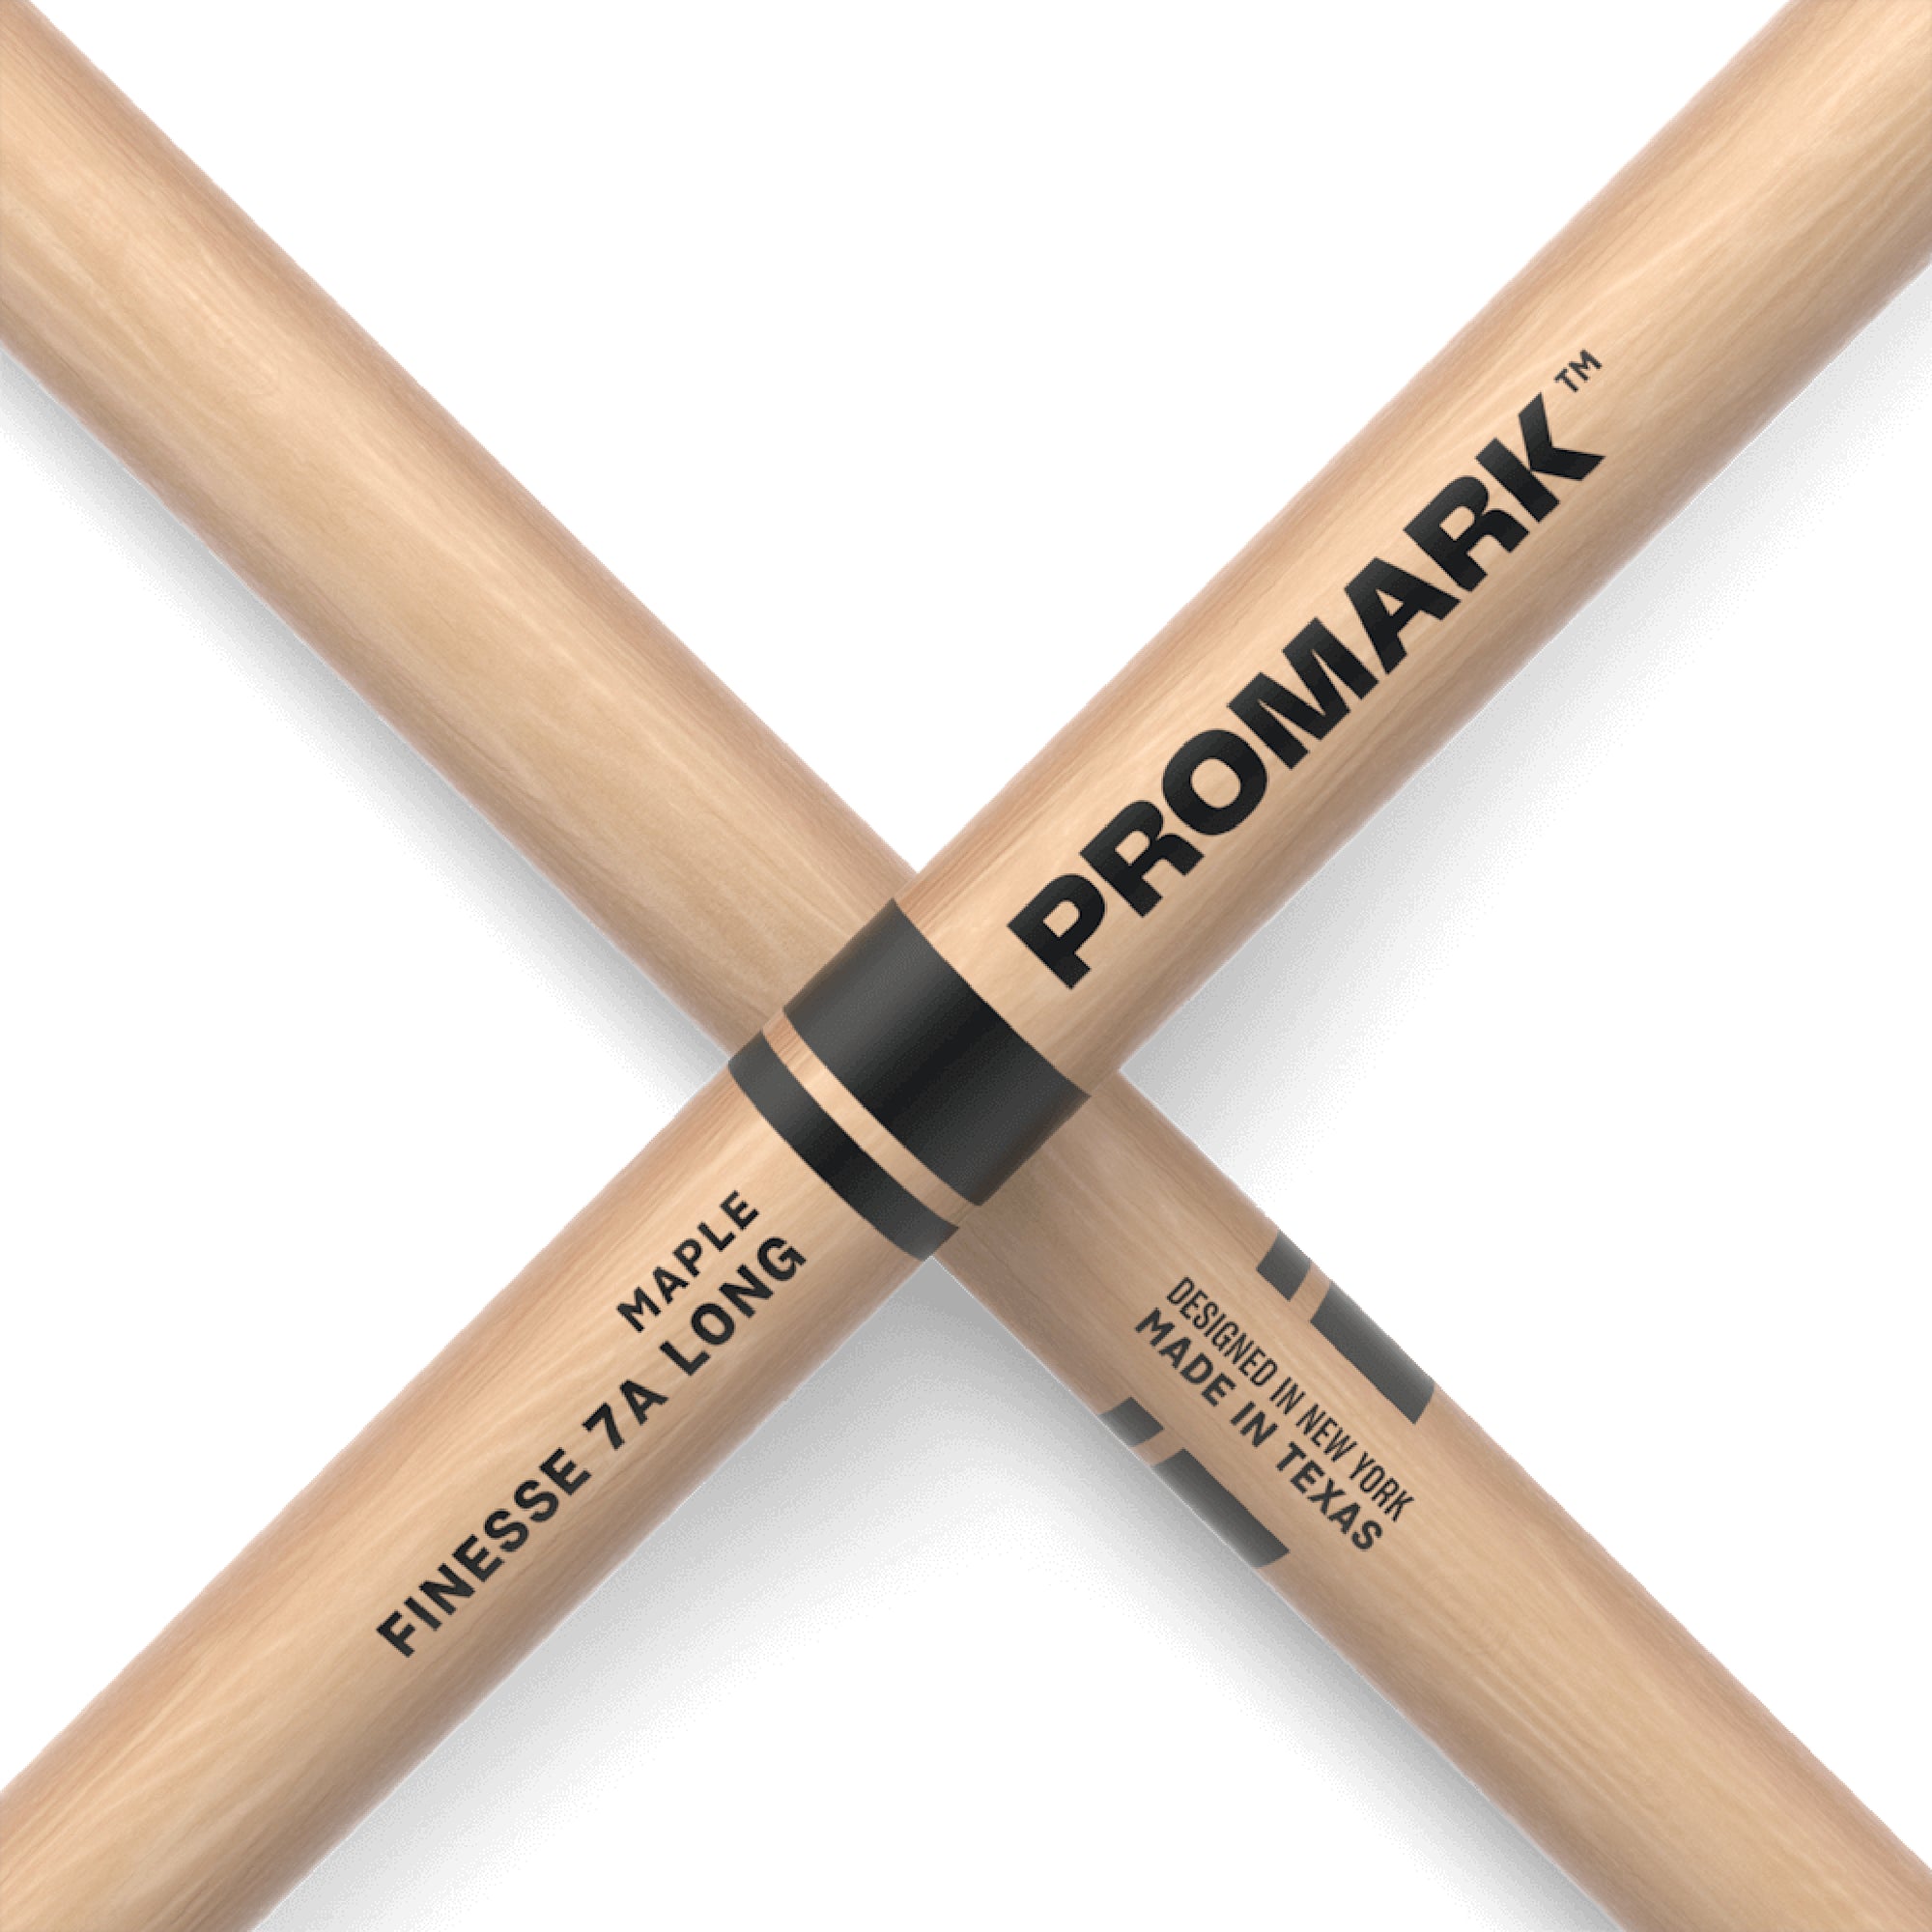 Promark Finesse 7A Long Maple Acorn Tip 16 1/2" long RBM535LRW Markings